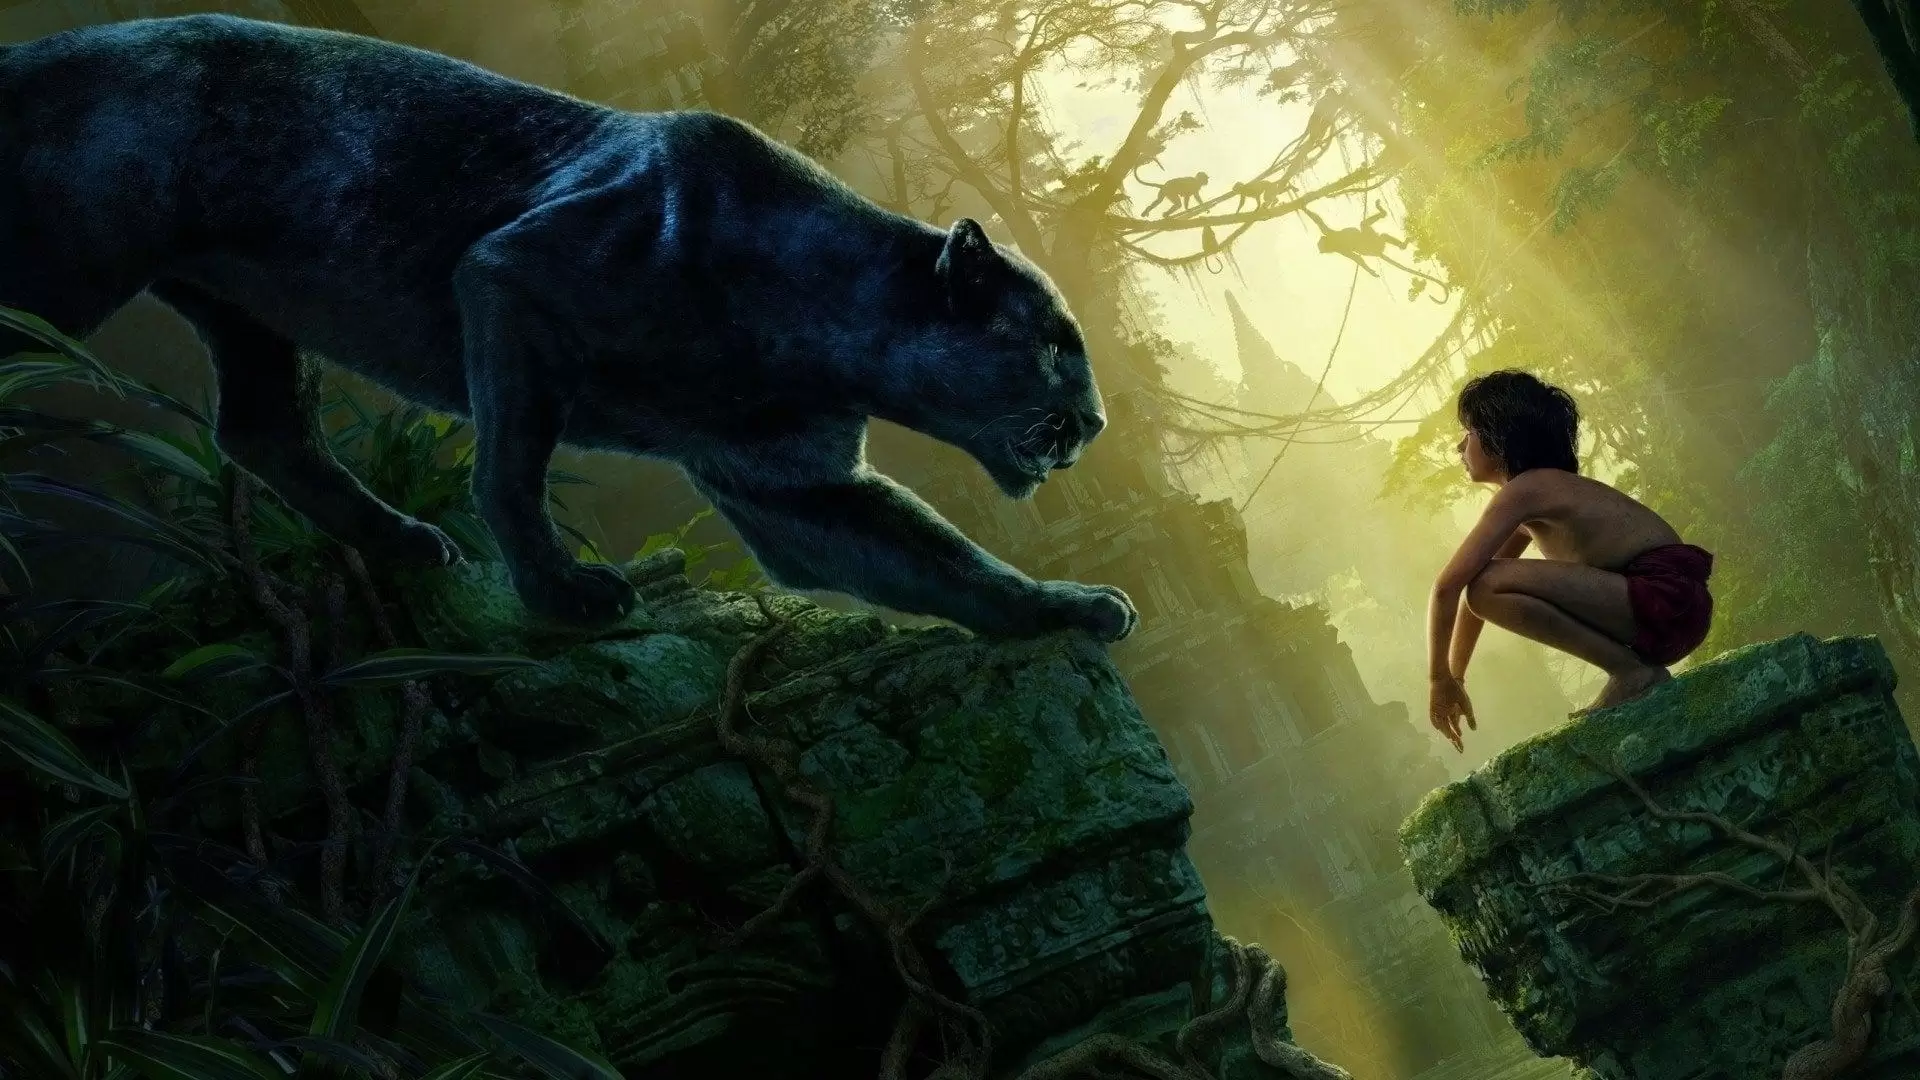 دانلود فیلم The Jungle Book 2016 (کتاب جنگل) با زیرنویس فارسی و تماشای آنلاین